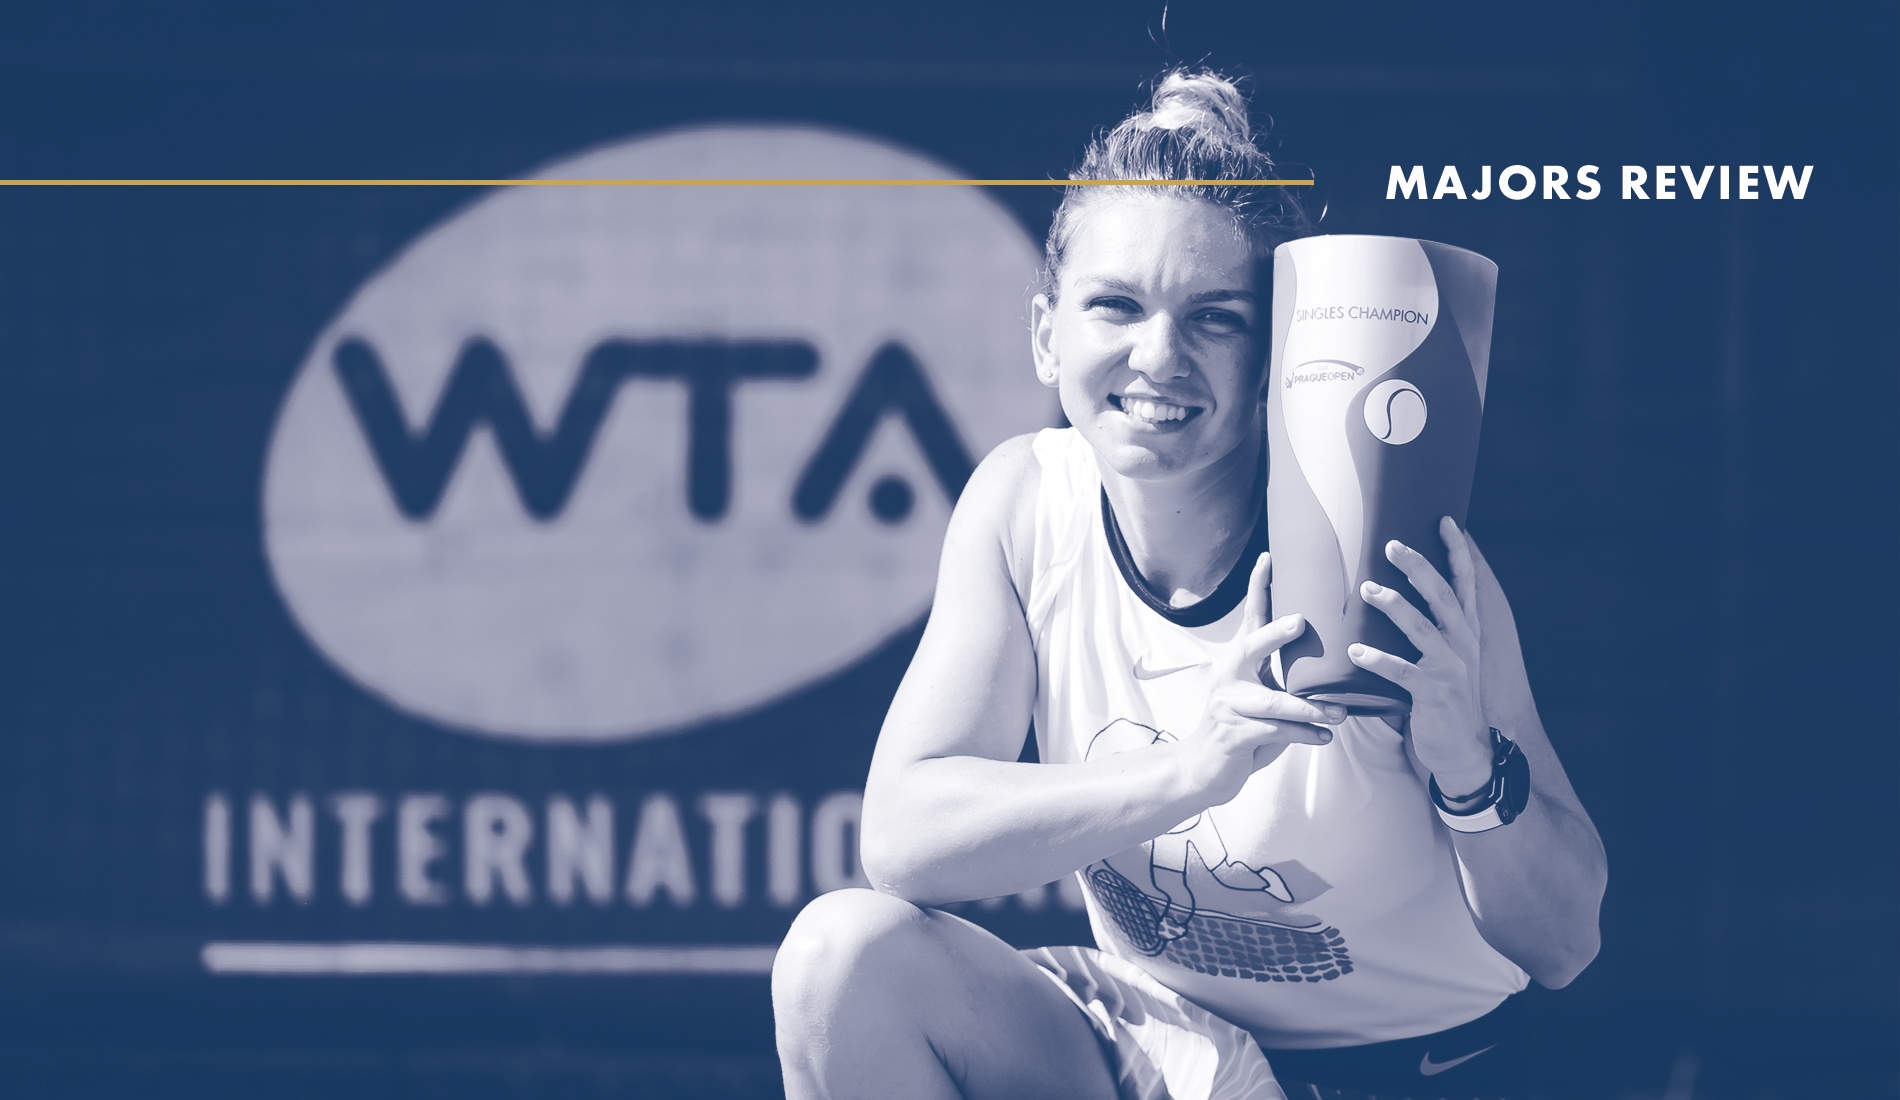 Simona Halep, Prague 2020 : Tennis Majors Review